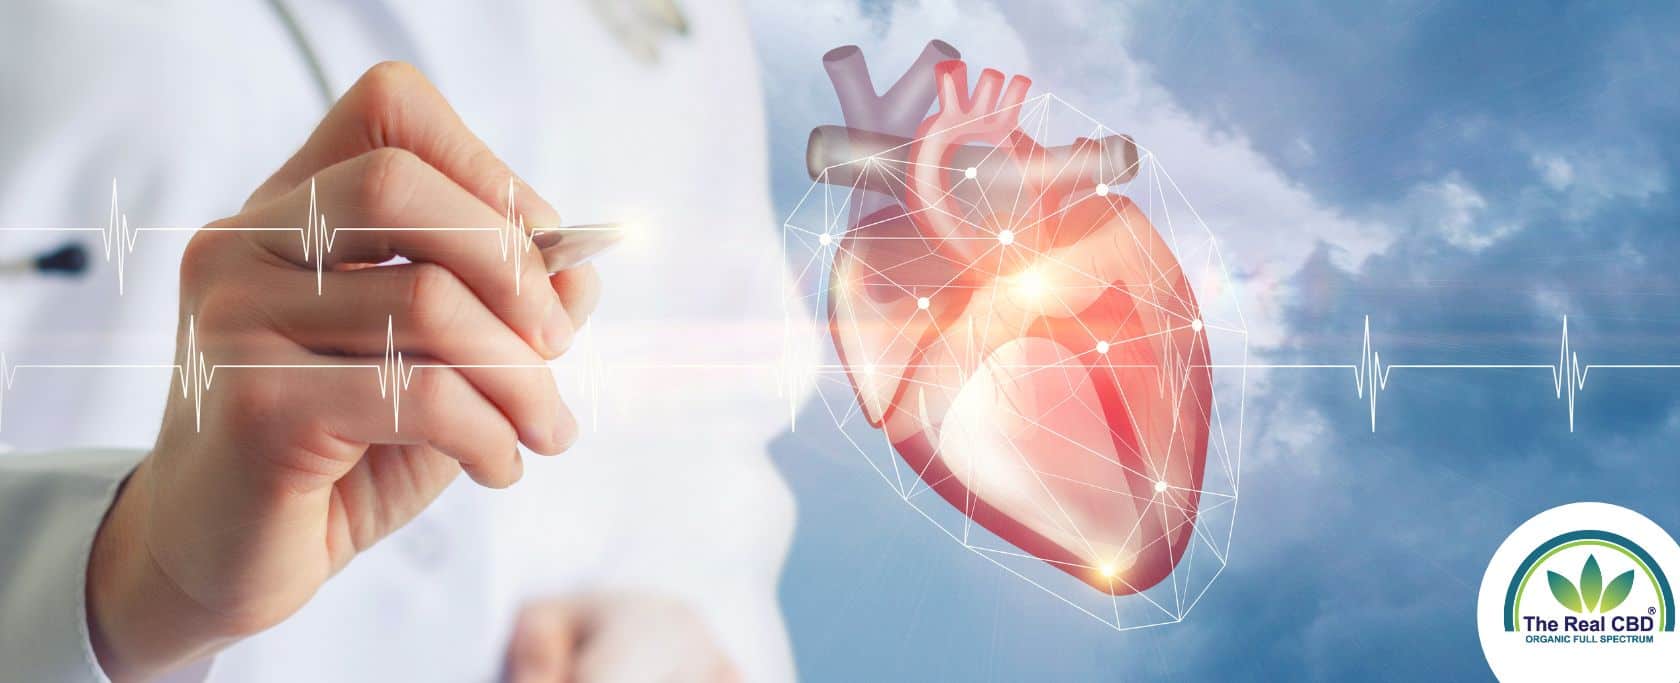 Le CBD est-il sans danger pour les patients cardiaques ?